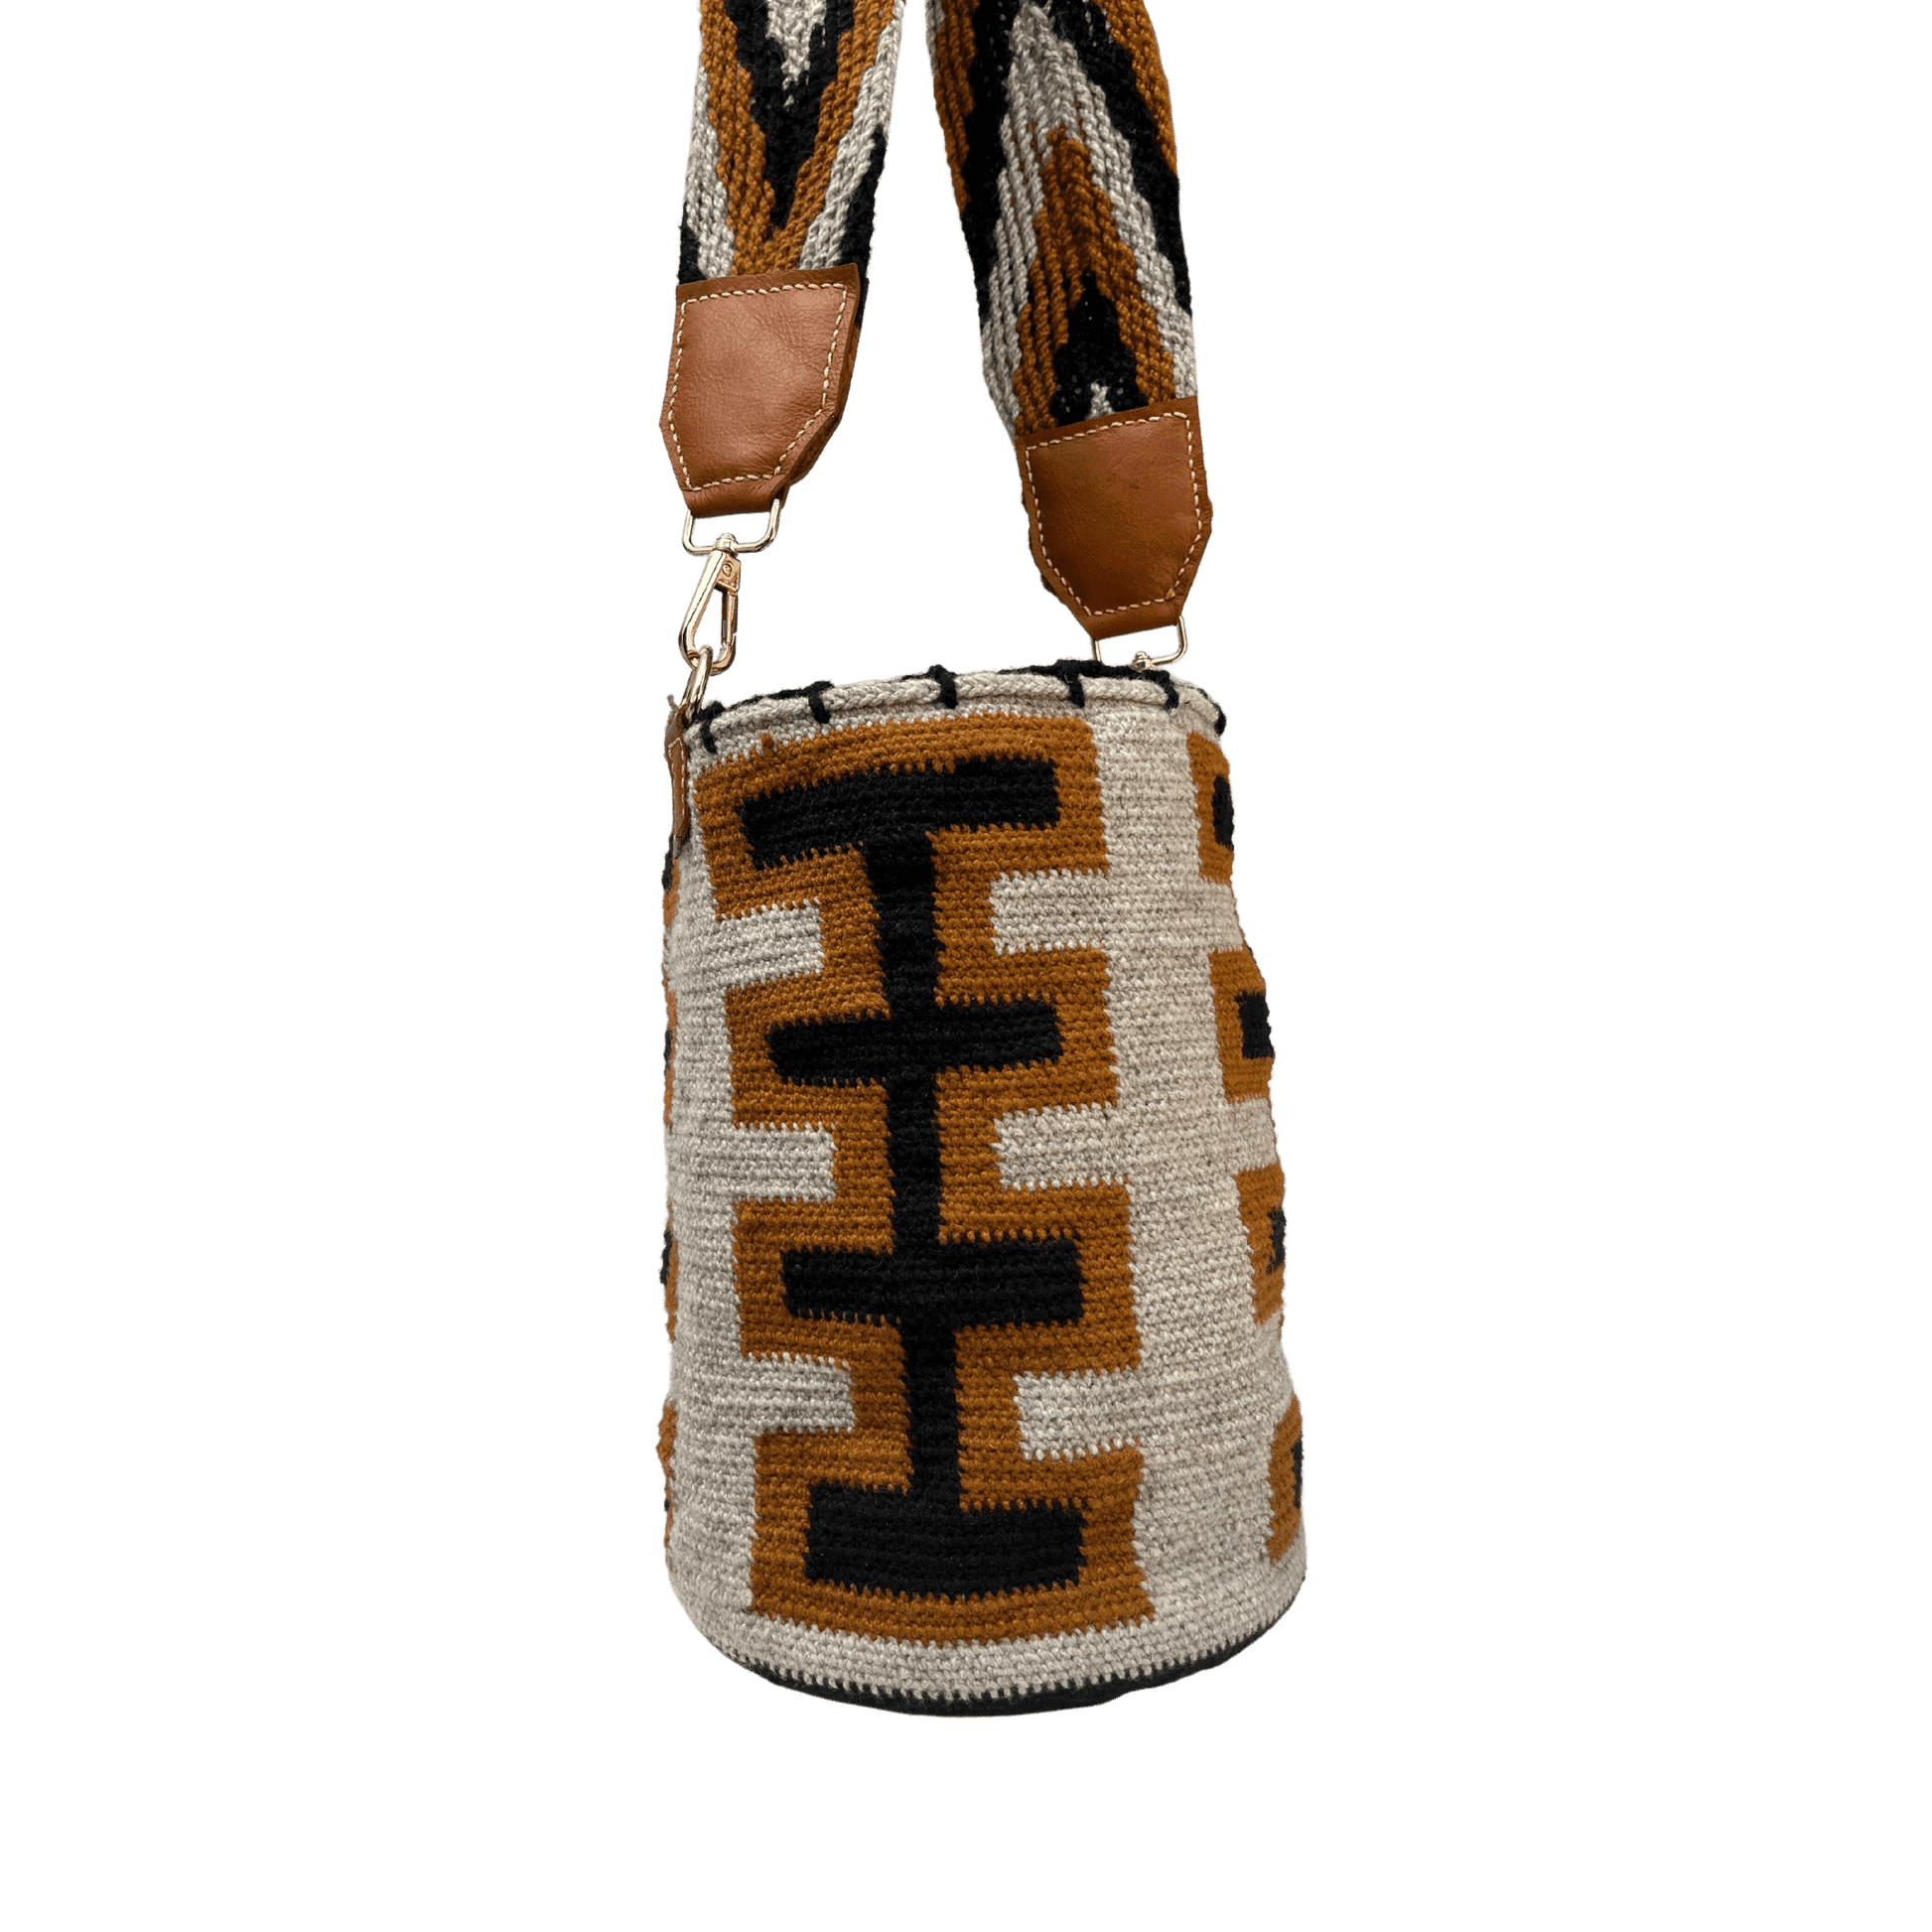 Mochila arhuaca tejida de forma artesanal para mujer con correa detalles en cuero y herrajes